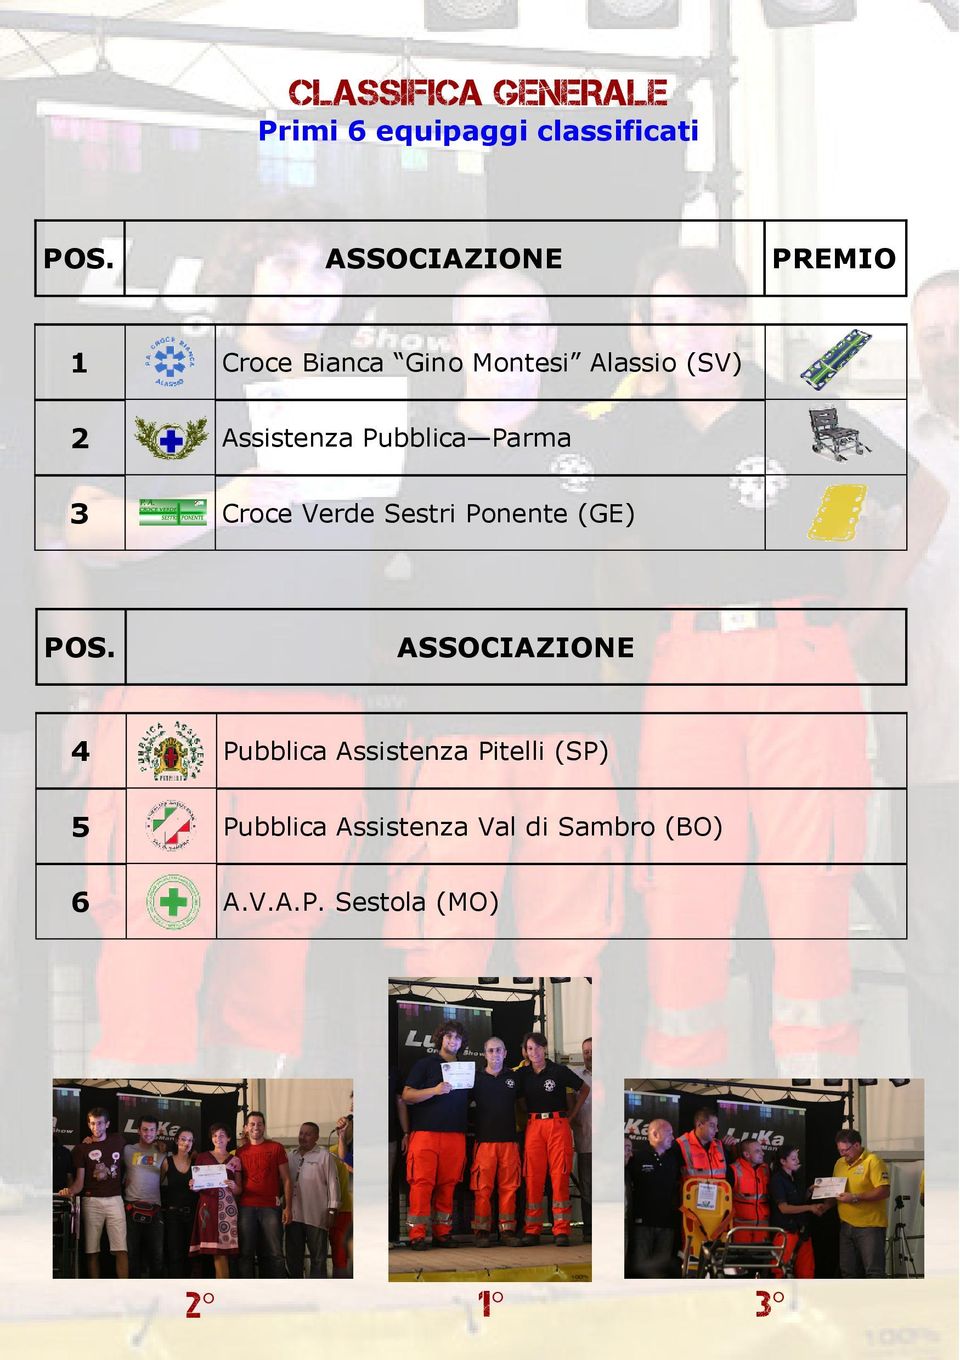 Pubblica Parma 3 Croce Verde Sestri Ponente (GE) POS.